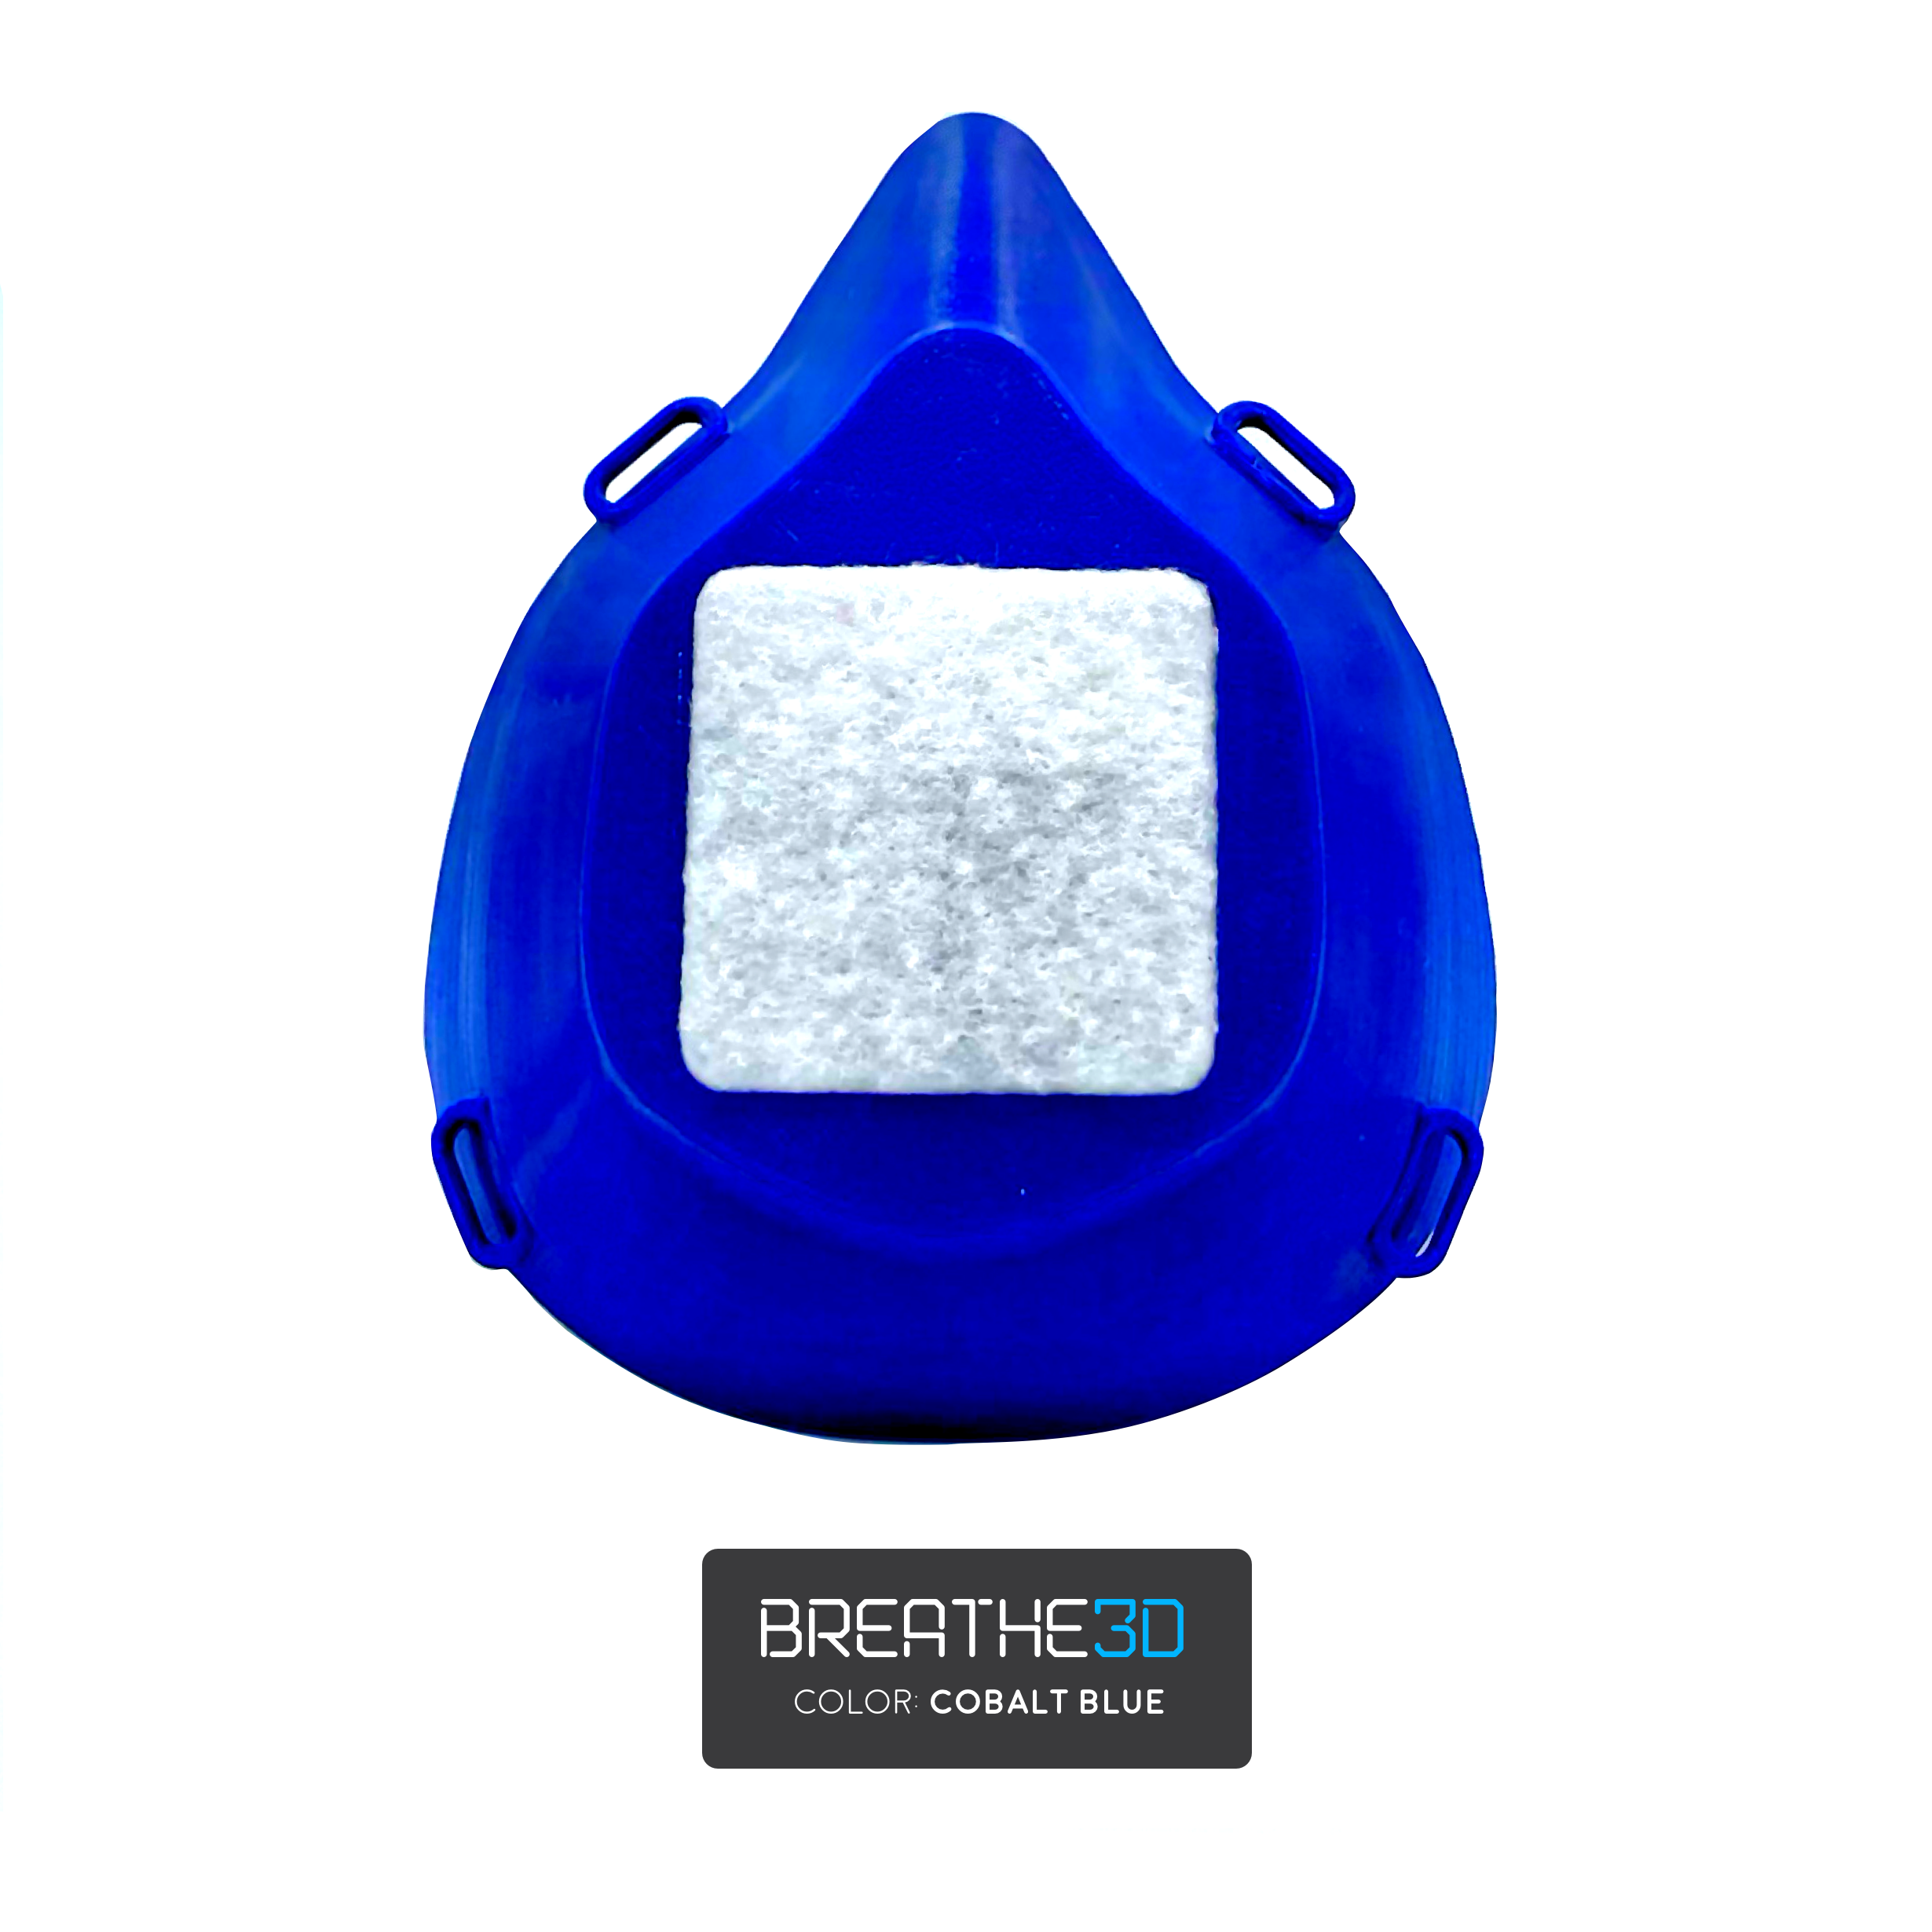 Breathe3D Mask: Cobalt Blue